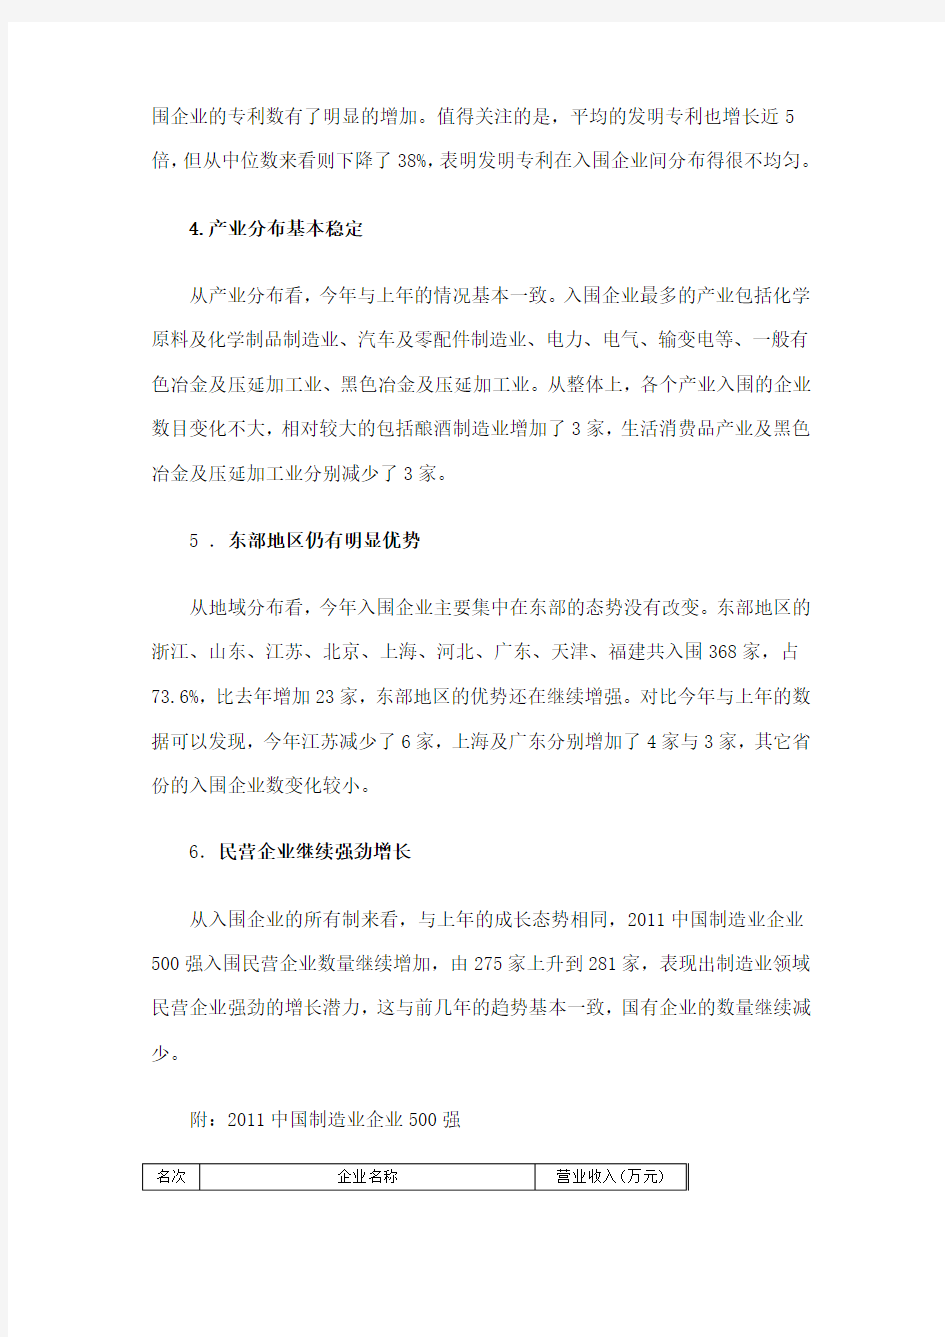 2011中国制造业企业500强全名单